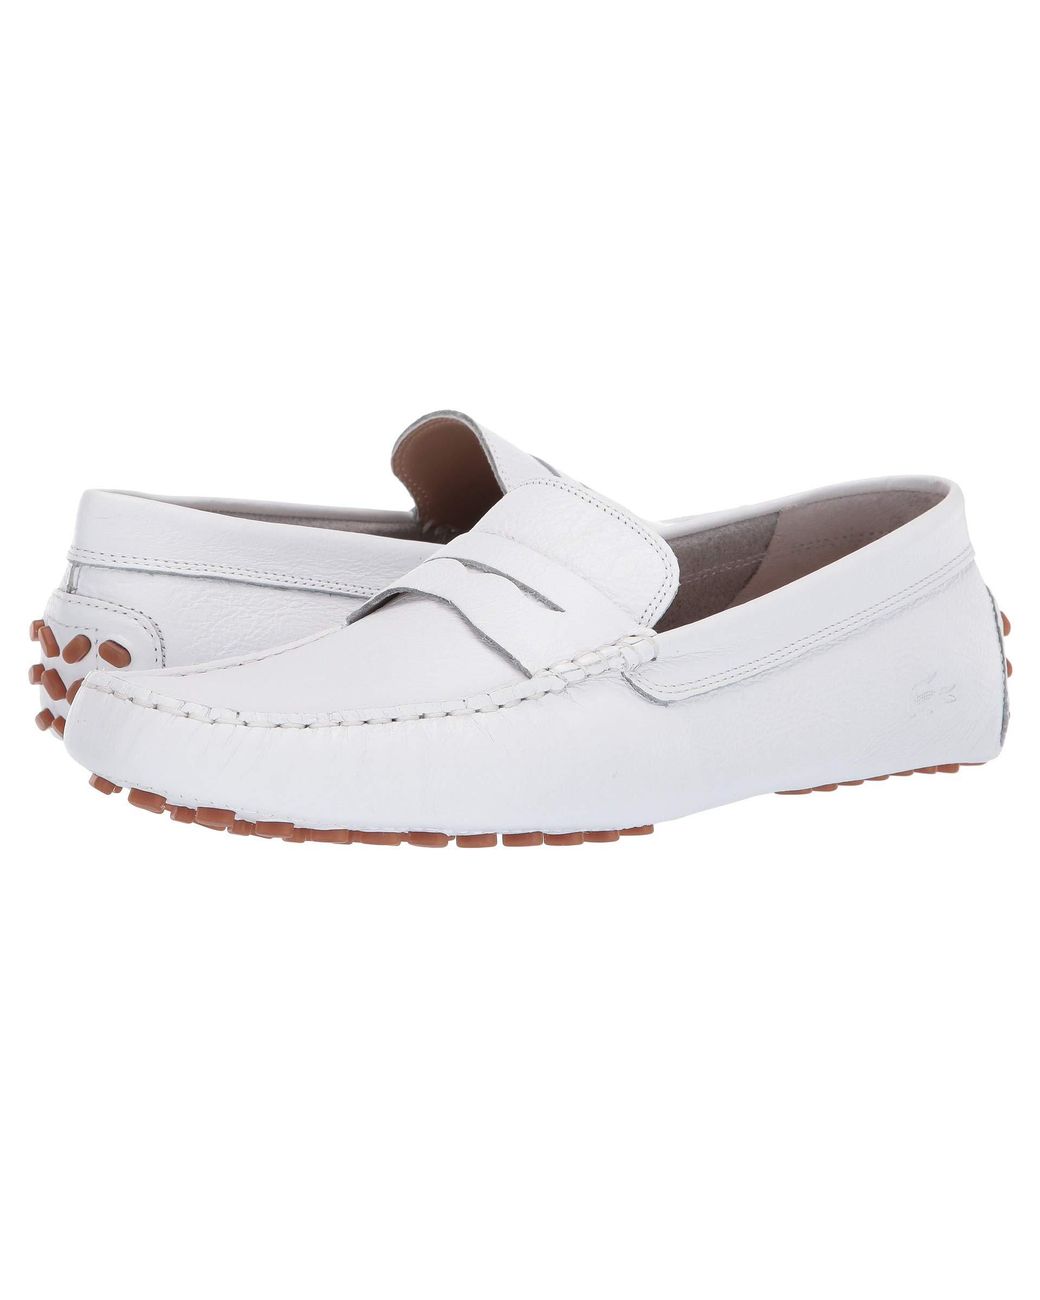 Lacoste Concours 119 1 P Cma (white/gum) Men's Shoes for Men | Lyst